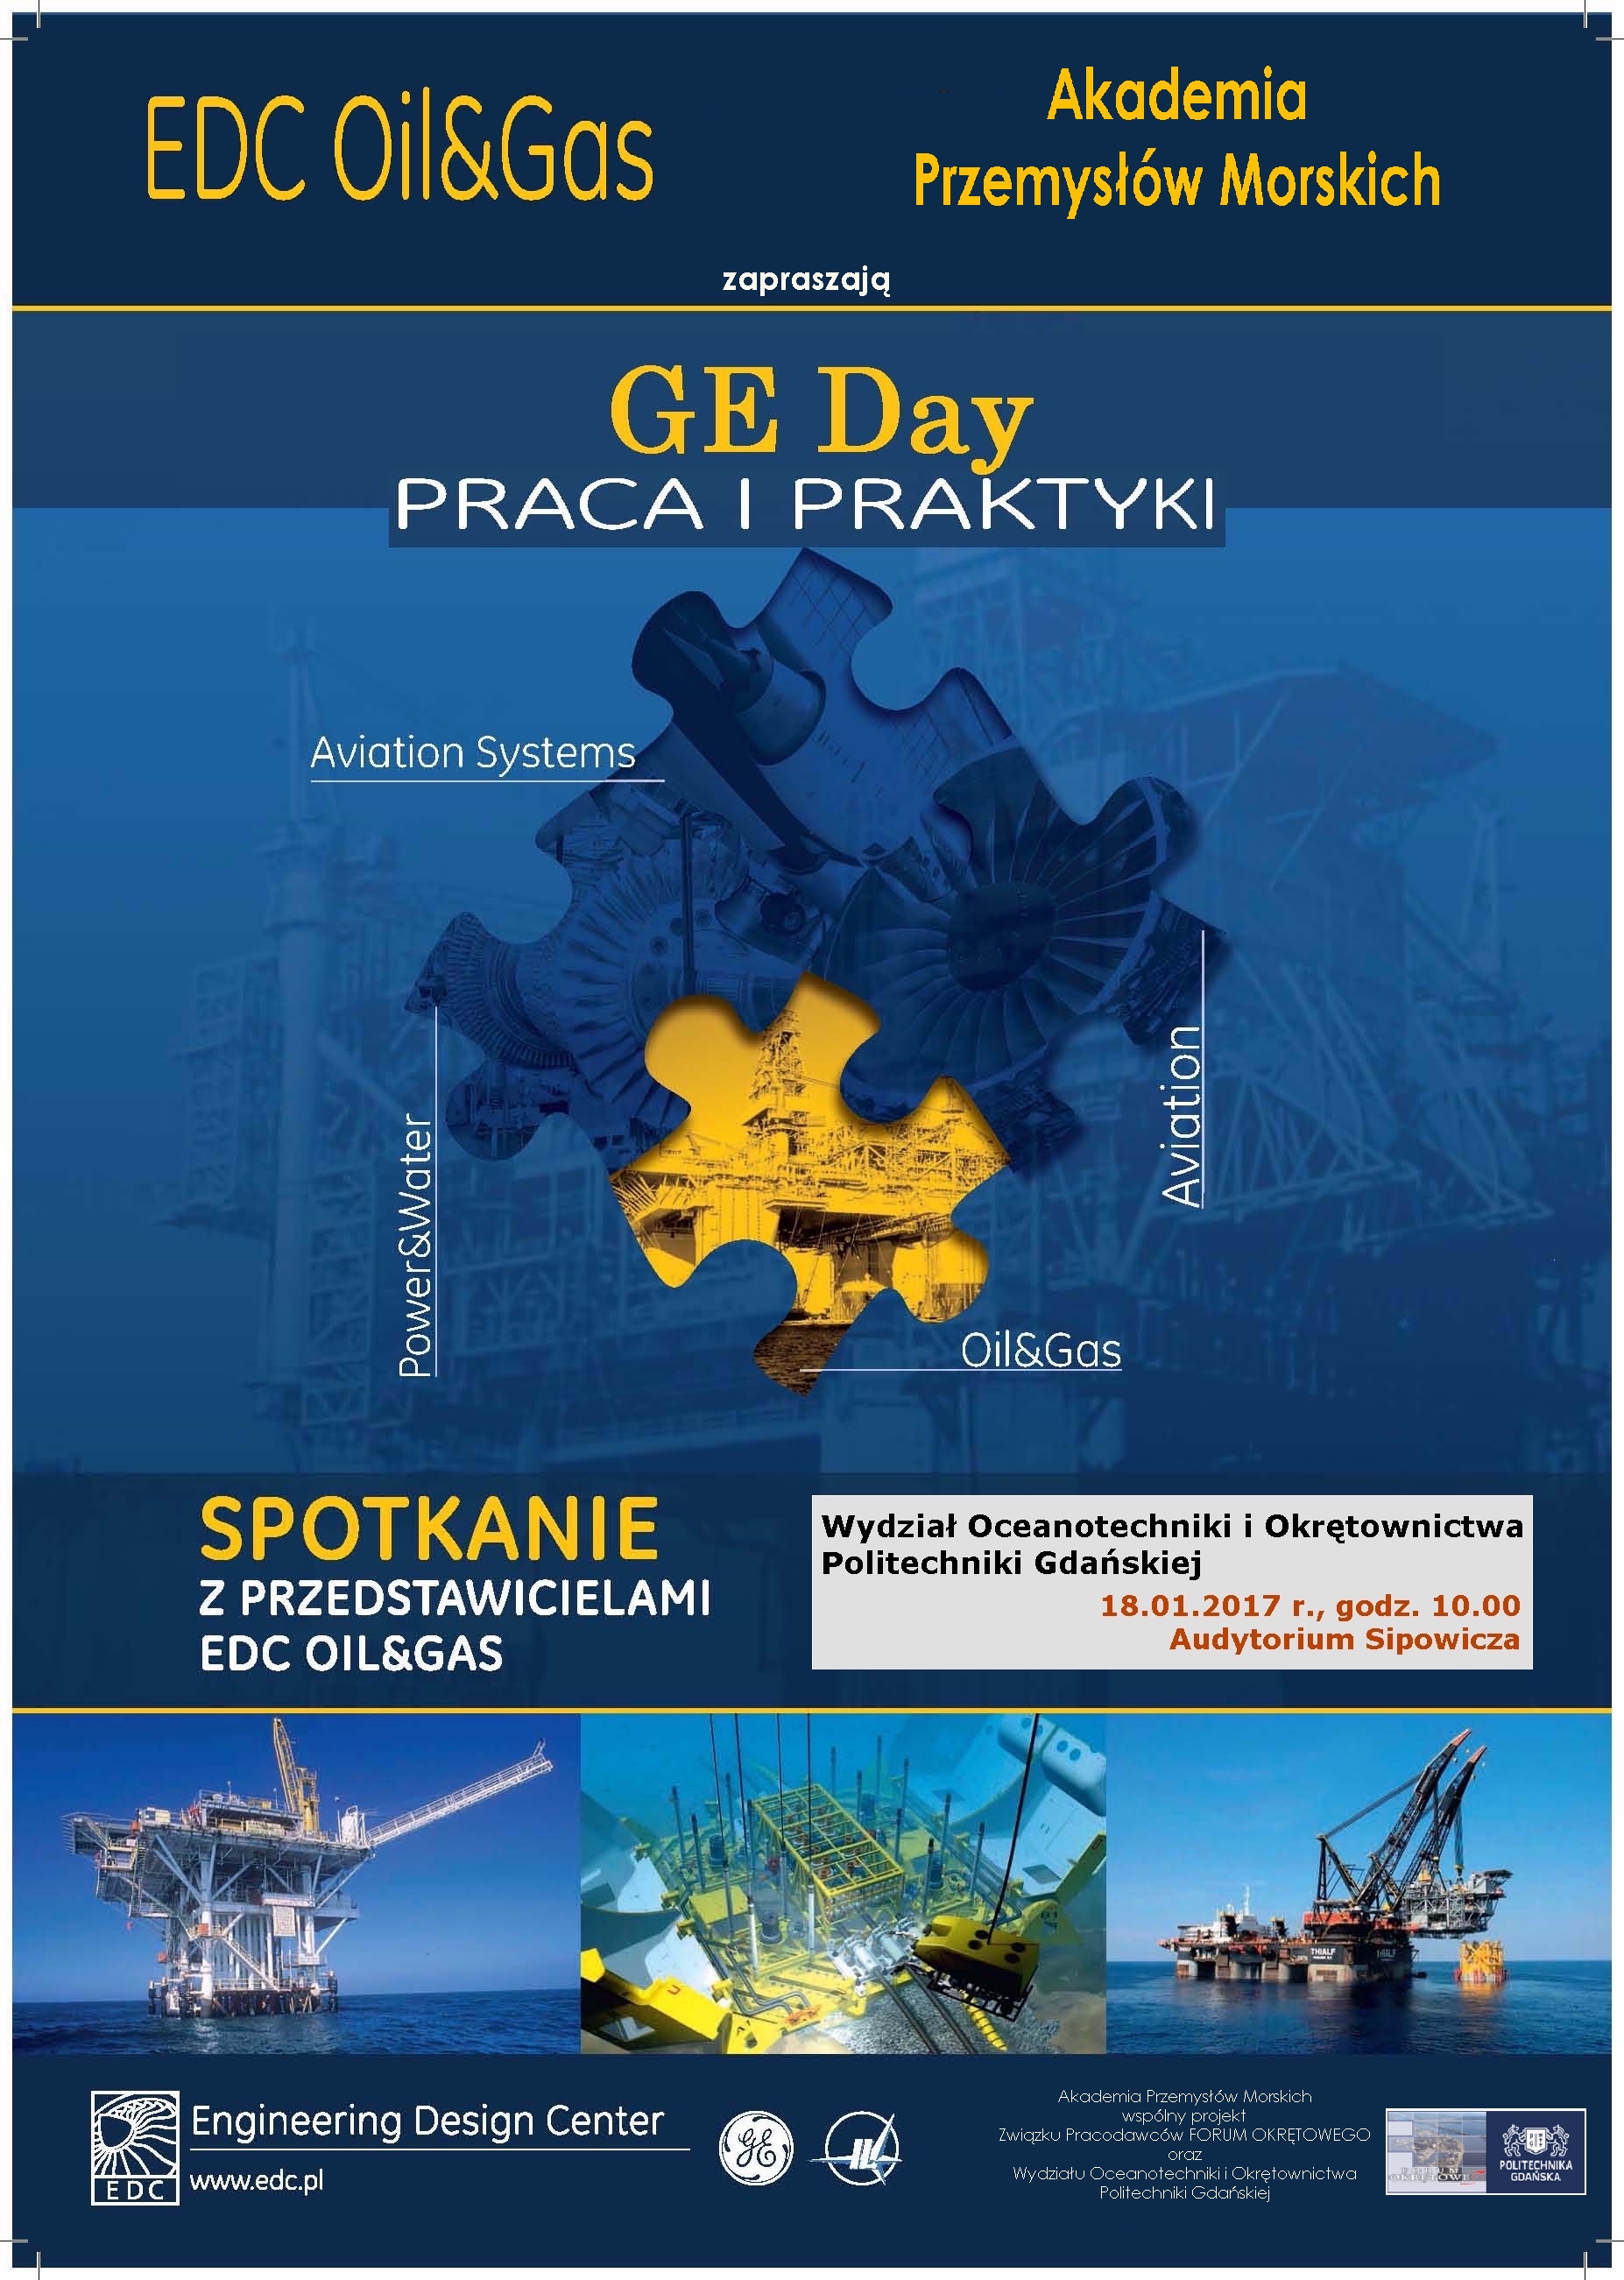 GE Day - GospodarkaMorska.pl